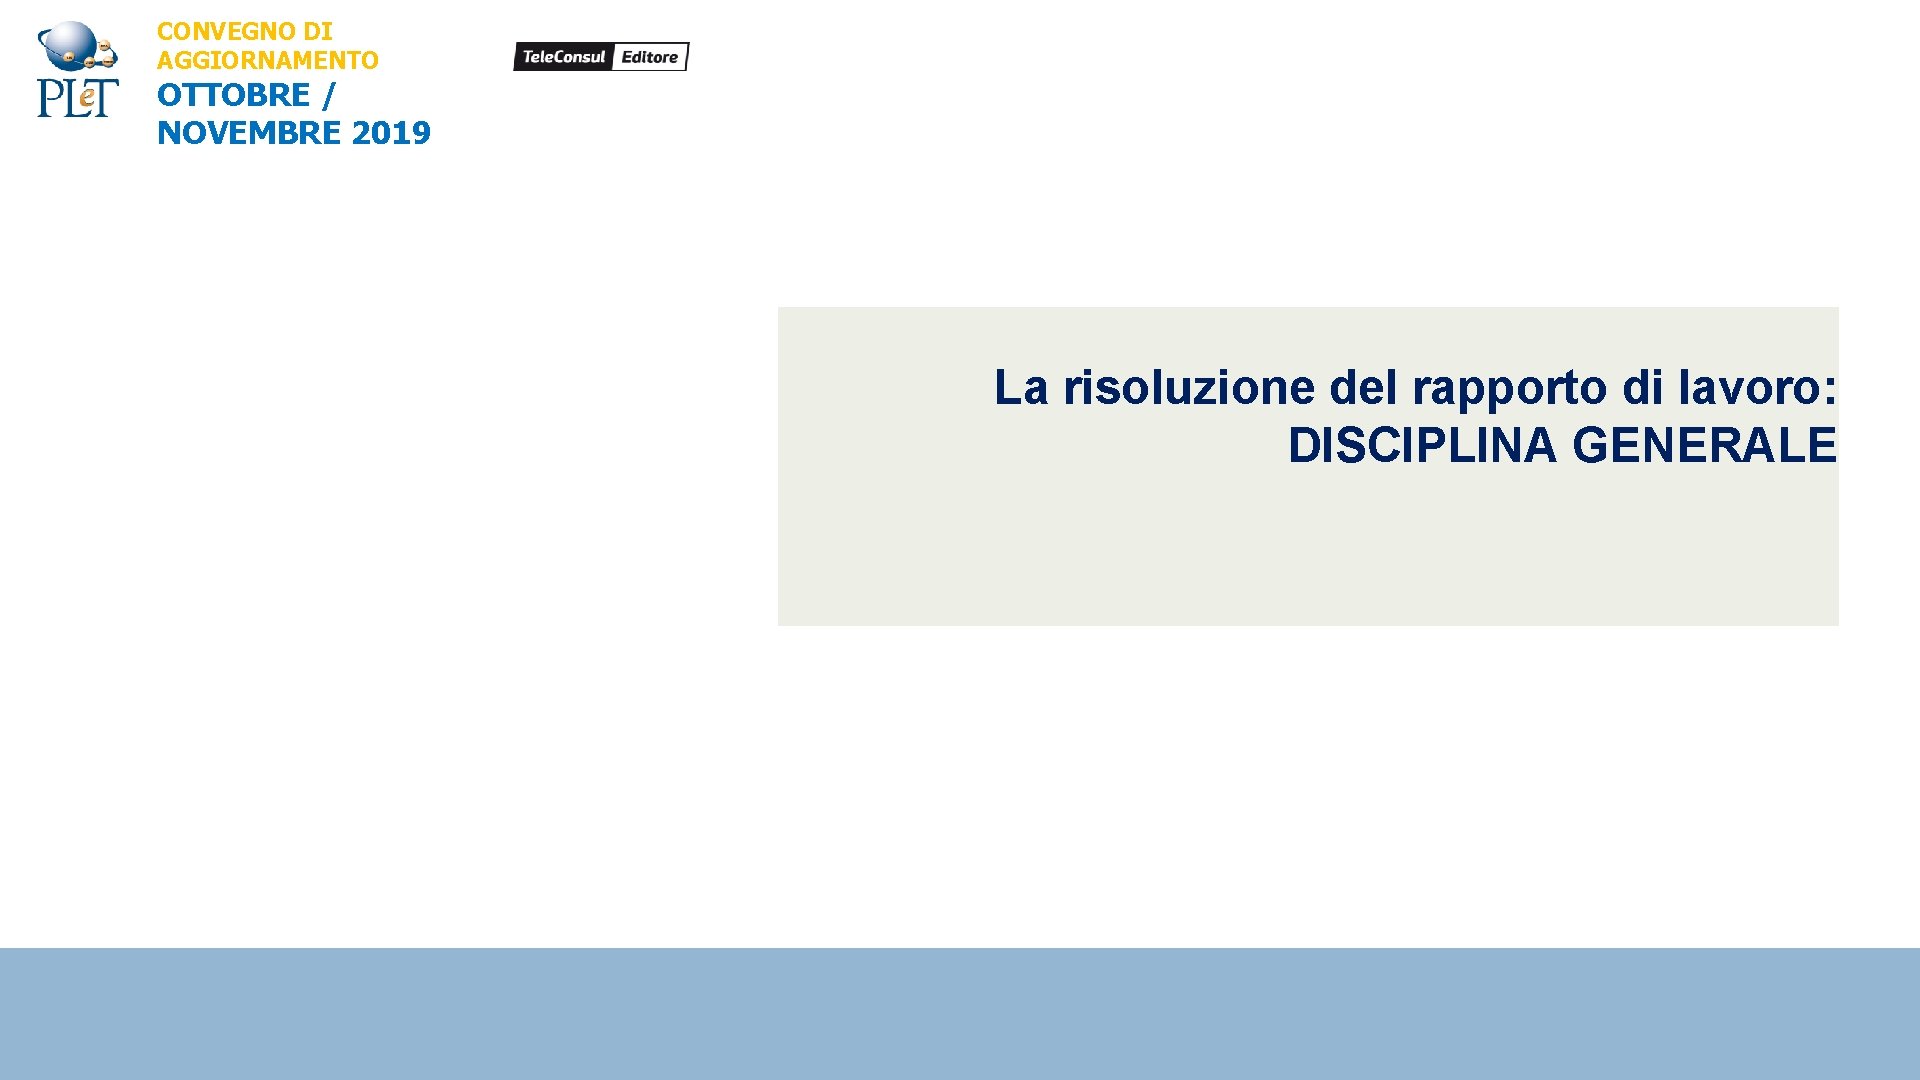 CONVEGNO DI AGGIORNAMENTO OTTOBRE / NOVEMBRE 2019 La risoluzione del rapporto di lavoro: DISCIPLINA